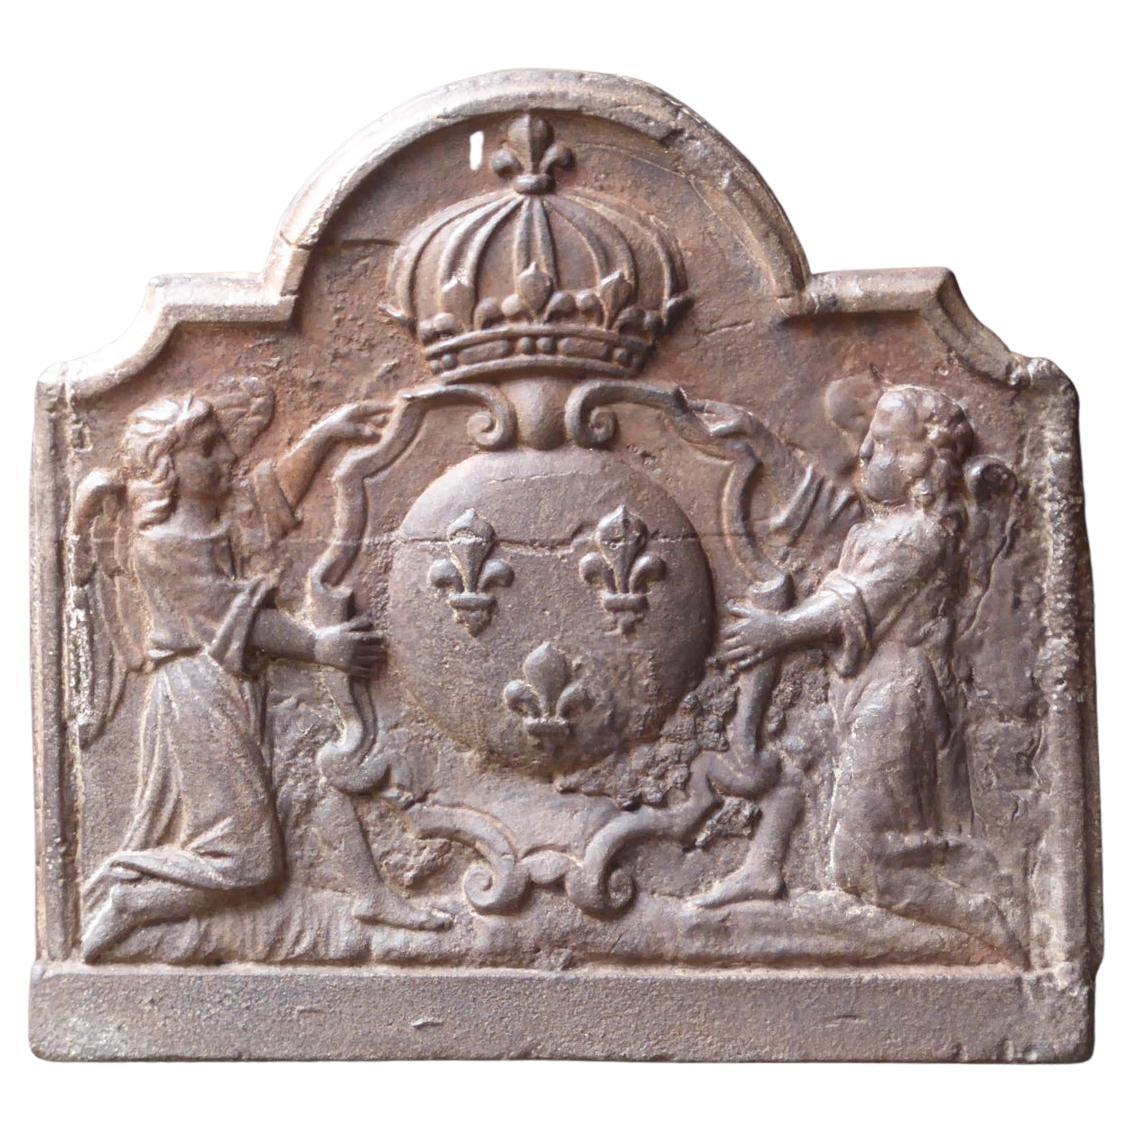 Antiker französischer Kaminschirm / Rückwand mit Wappen aus Frankreich, 17.-18. Jahrhundert